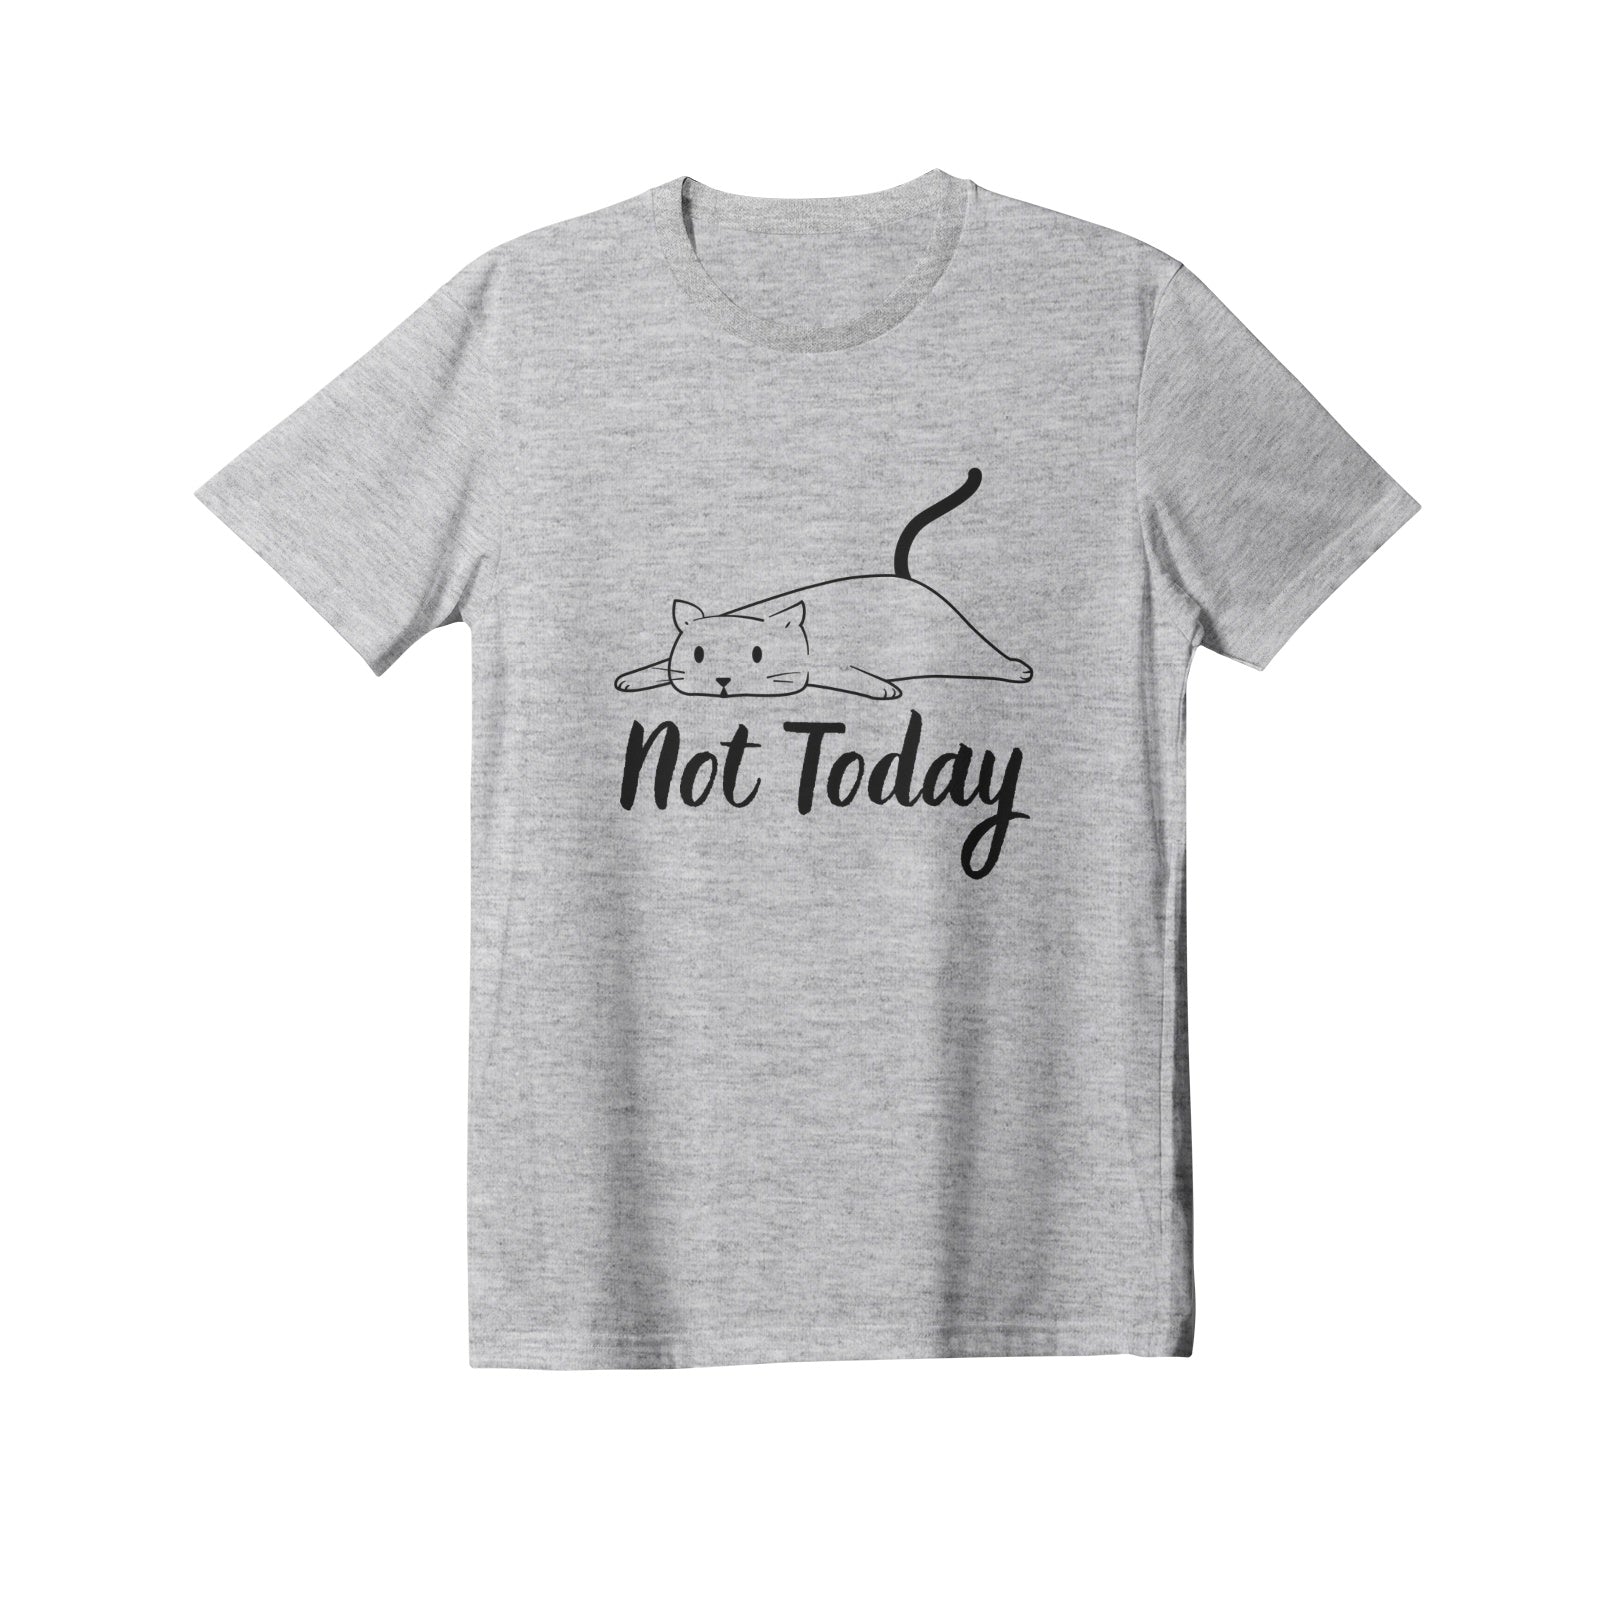 Not Today Lazy Cat Women's Premium Cotton T-Shirt - DromedarShop.com Online Boutique